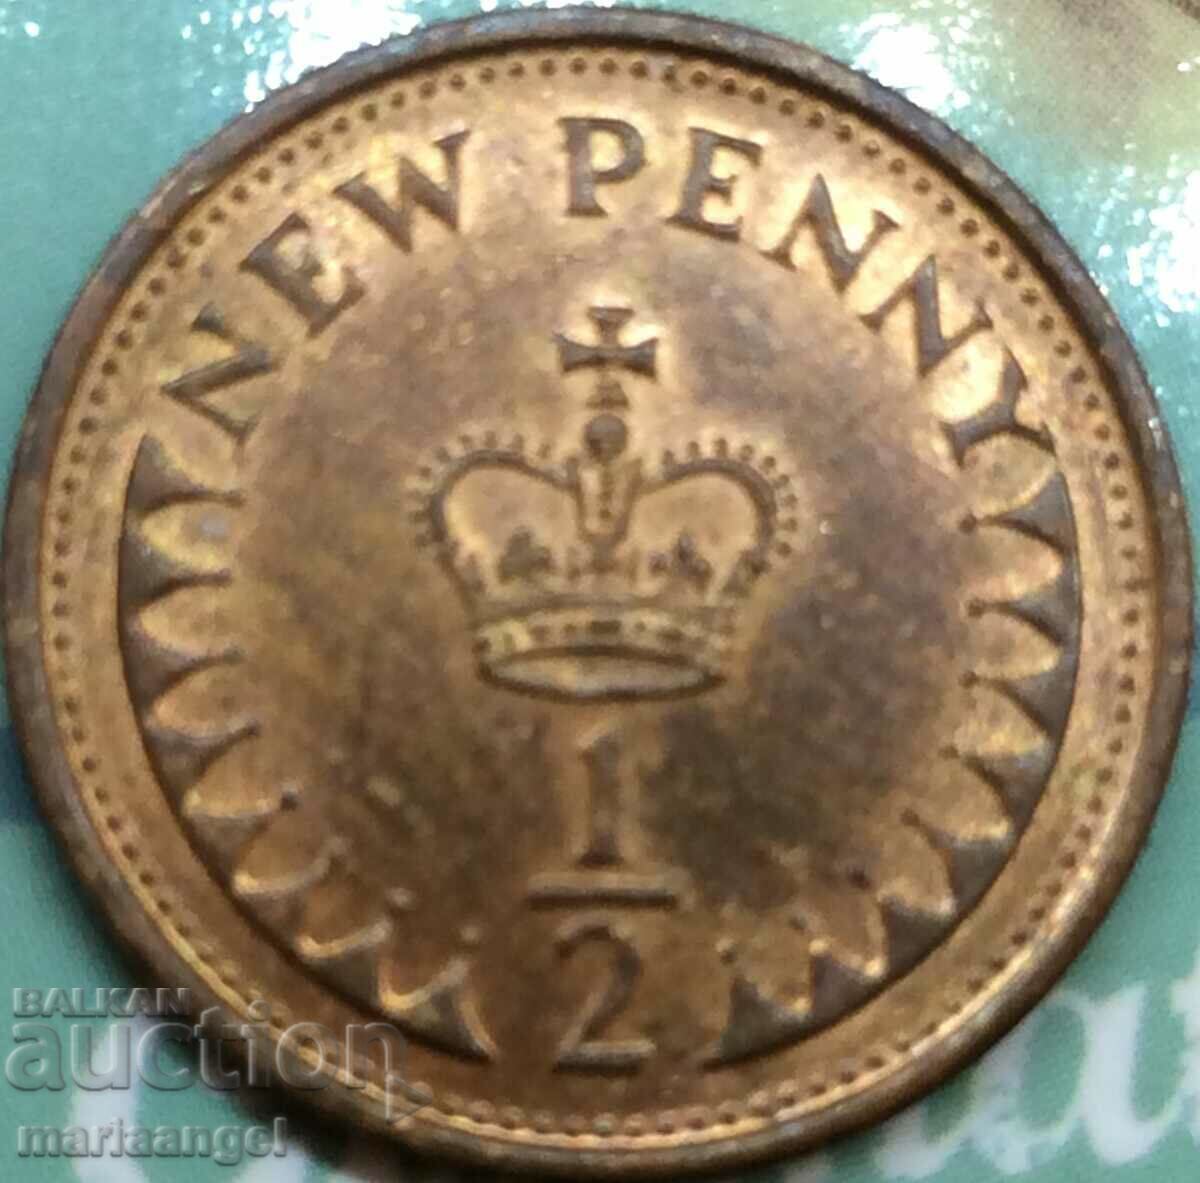 Marea Britanie 1/2 penny 1979